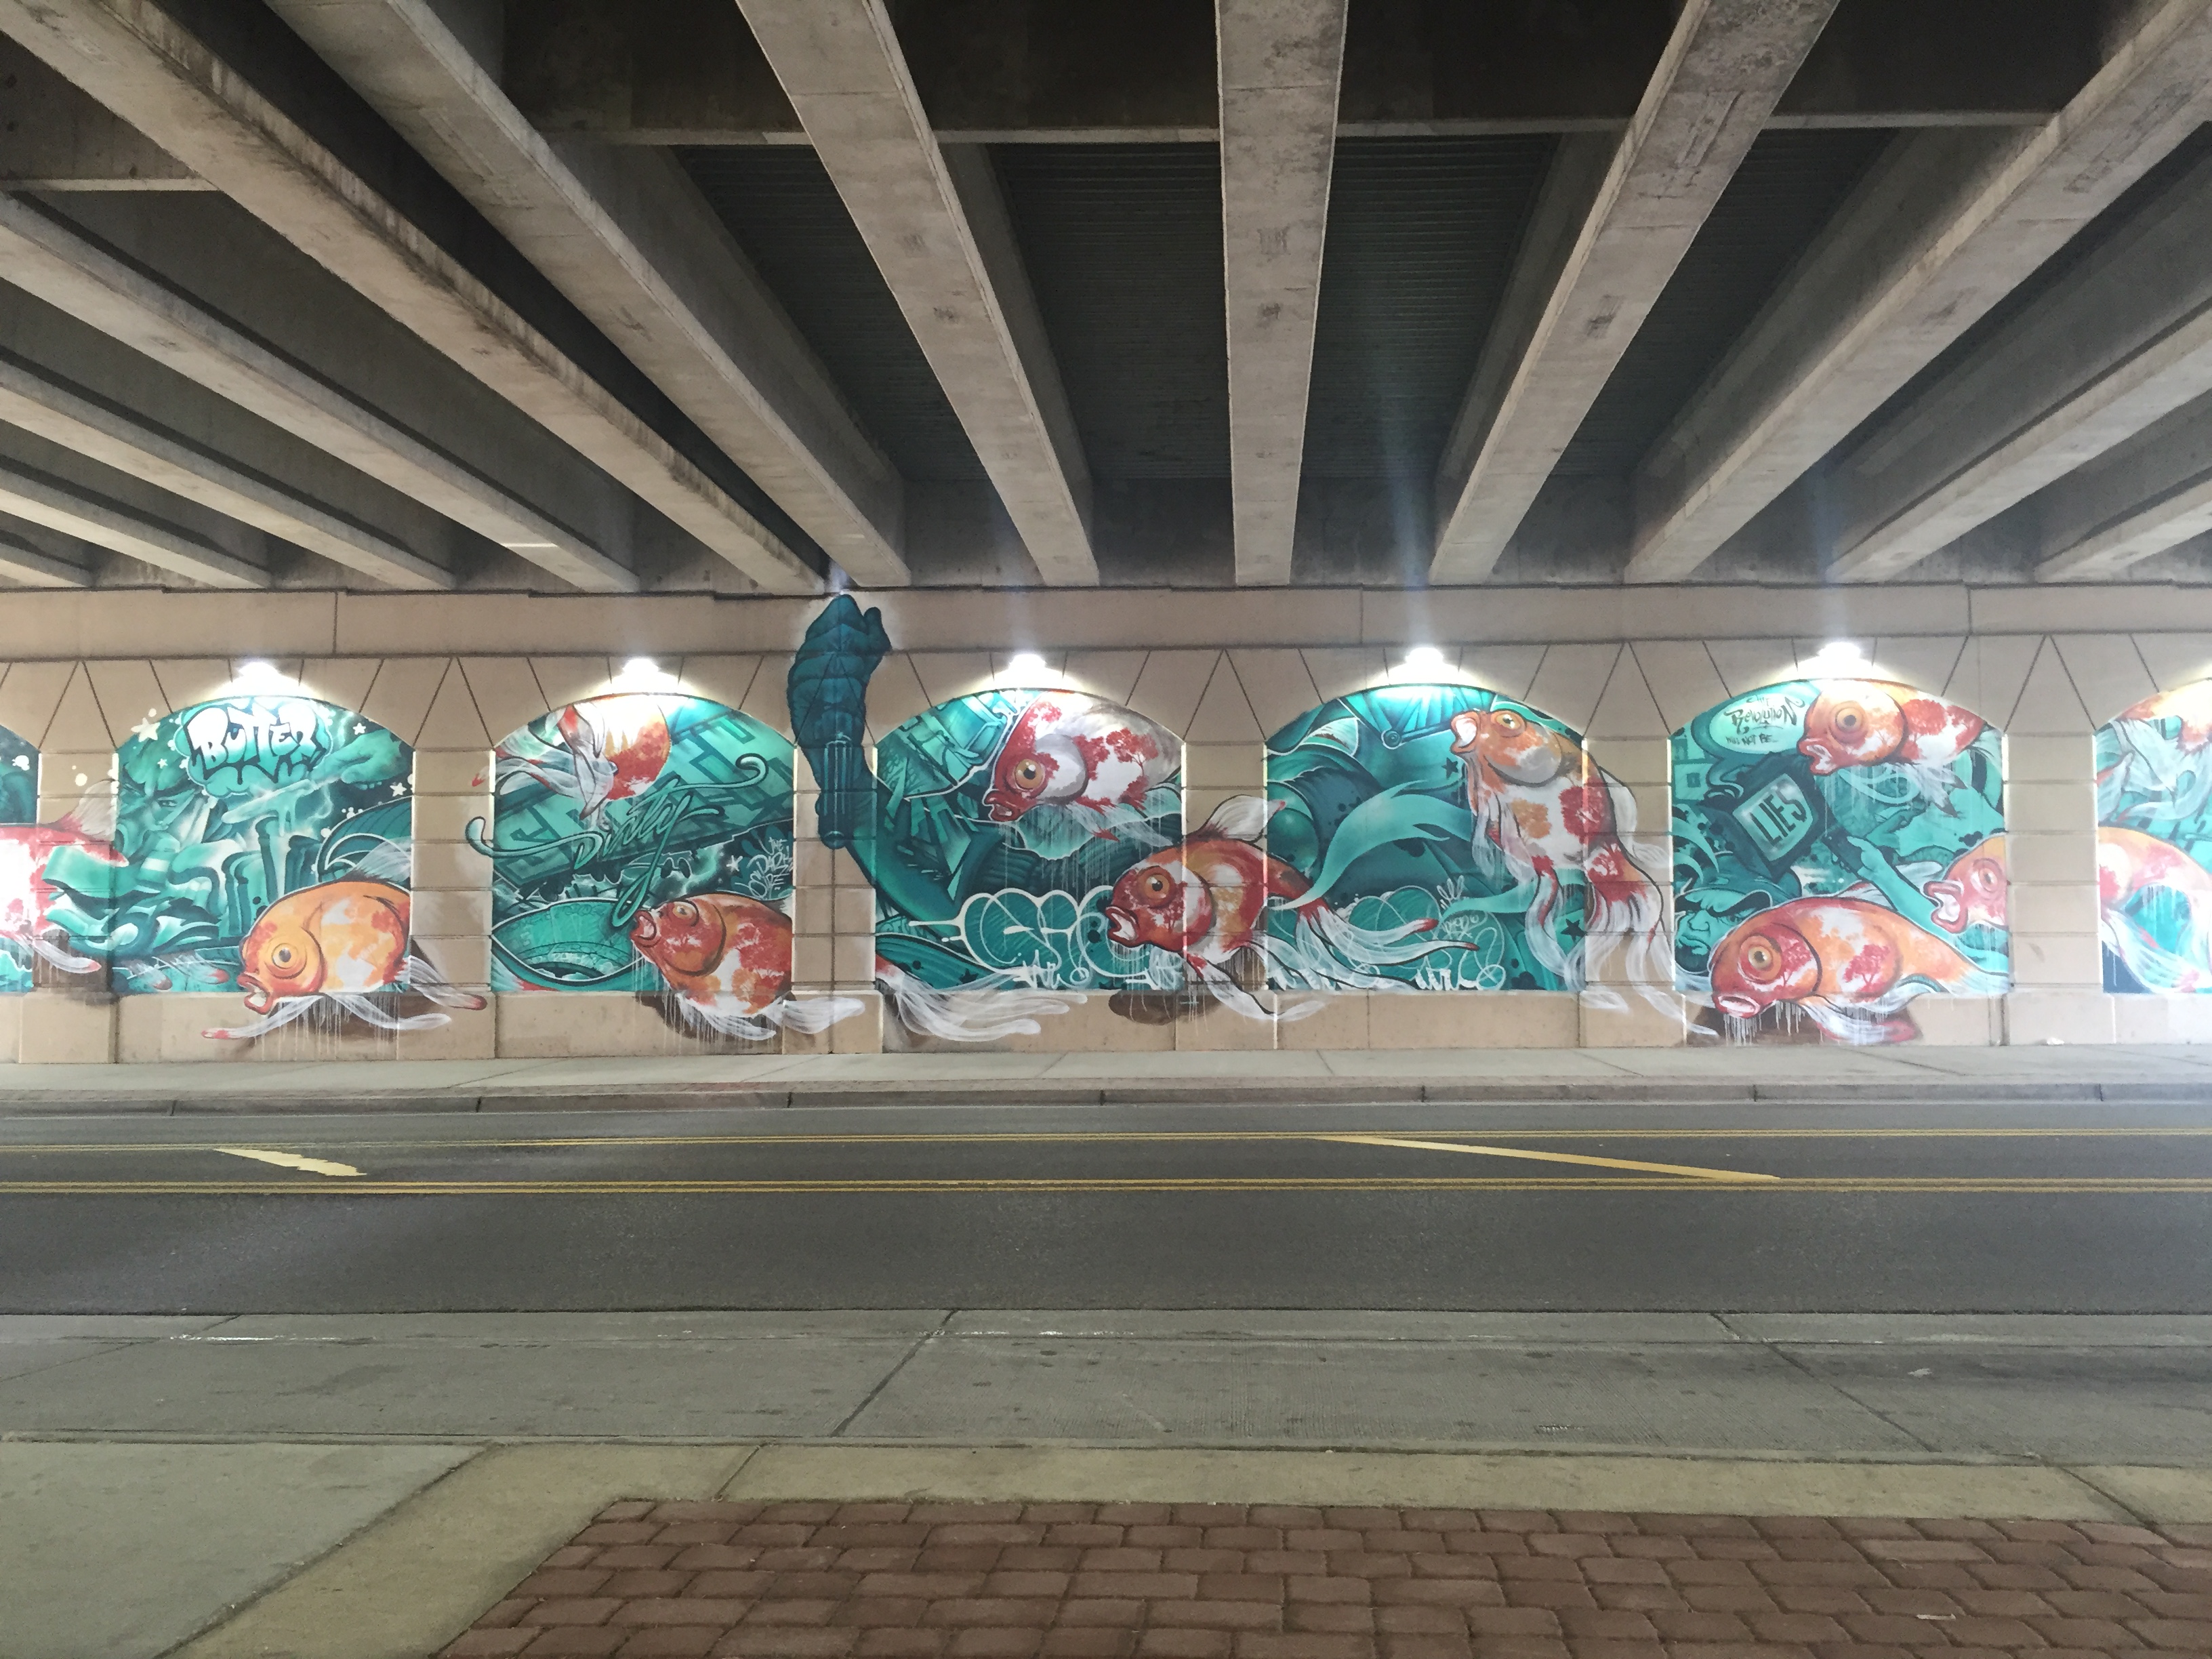 Graffiti wall at a 50 bus stop